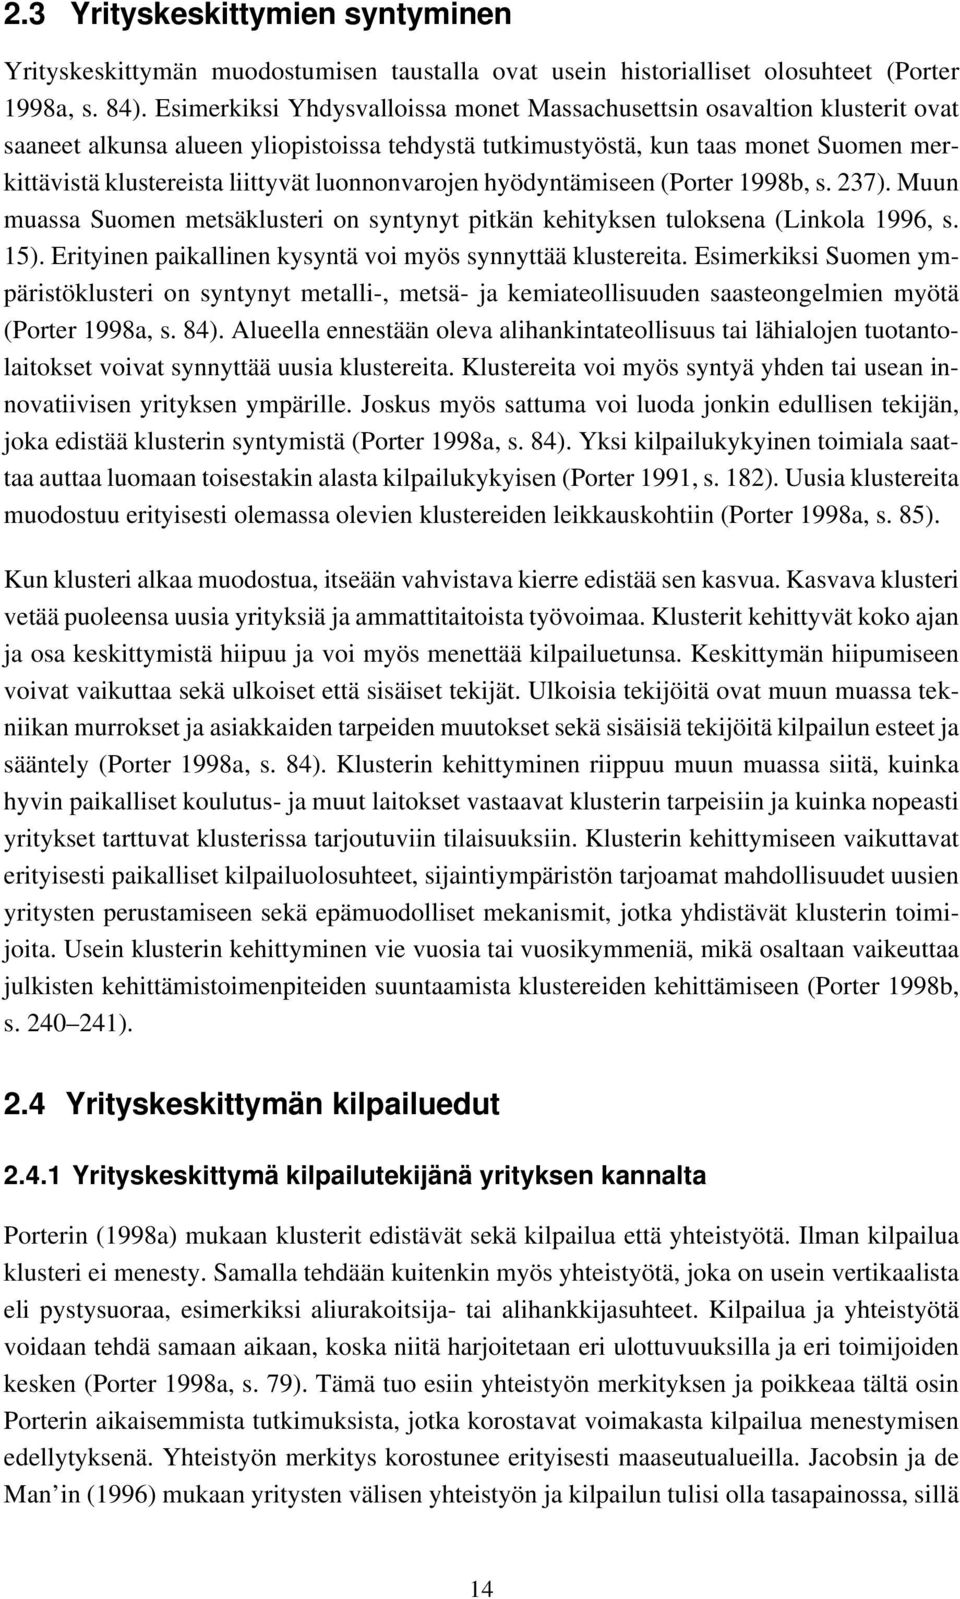 luonnonvarojen hyödyntämiseen (Porter 1998b, s. 237). Muun muassa Suomen metsäklusteri on syntynyt pitkän kehityksen tuloksena (Linkola 1996, s. 15).